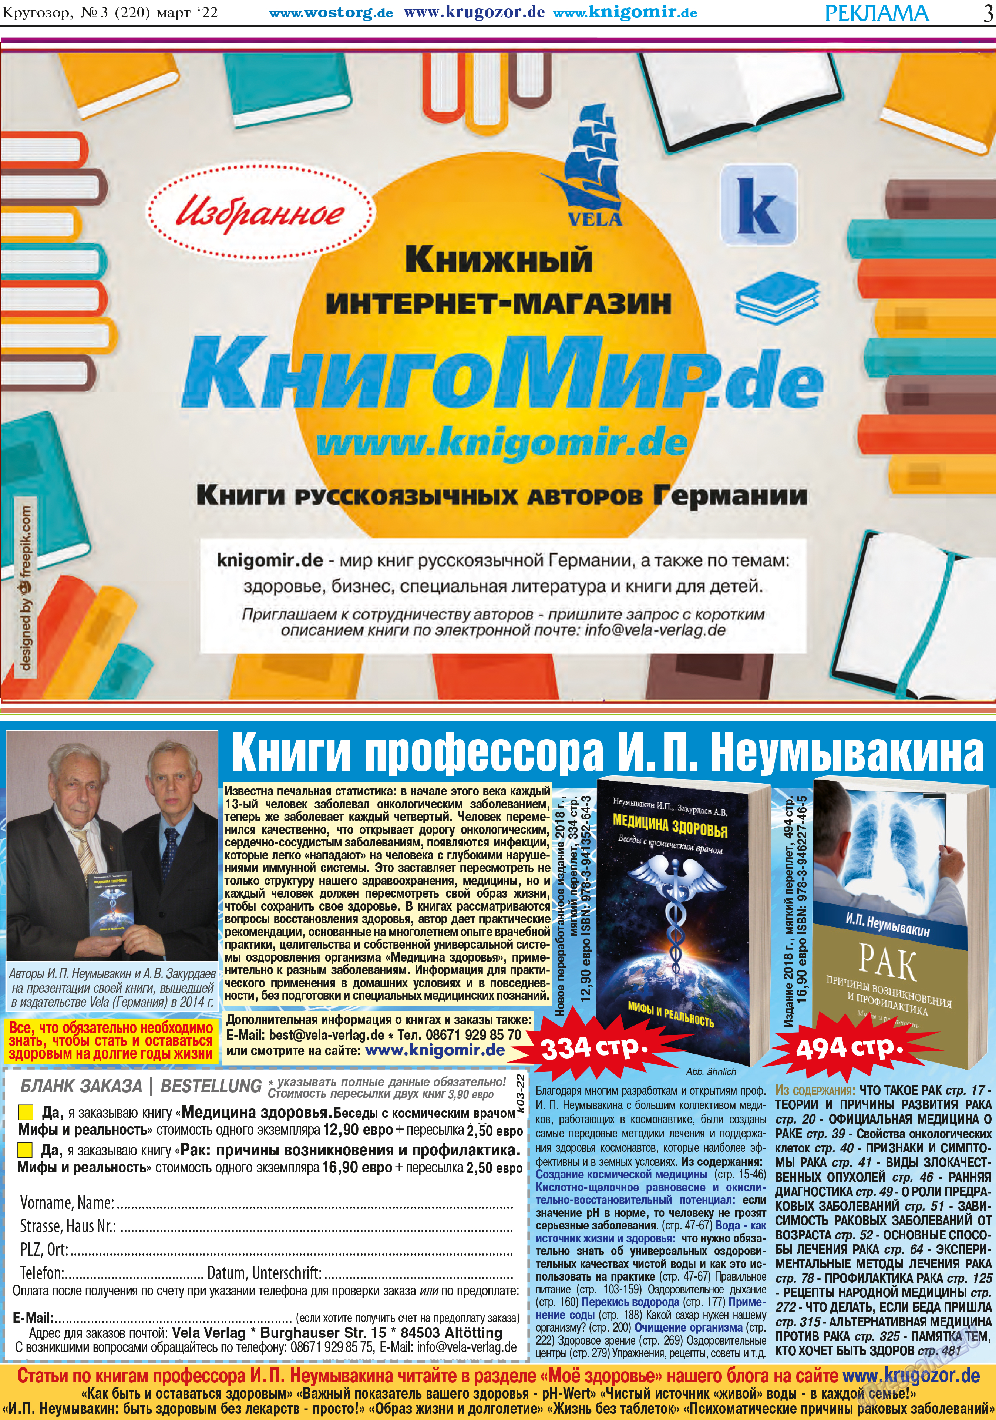 Кругозор, газета. 2022 №3 стр.3